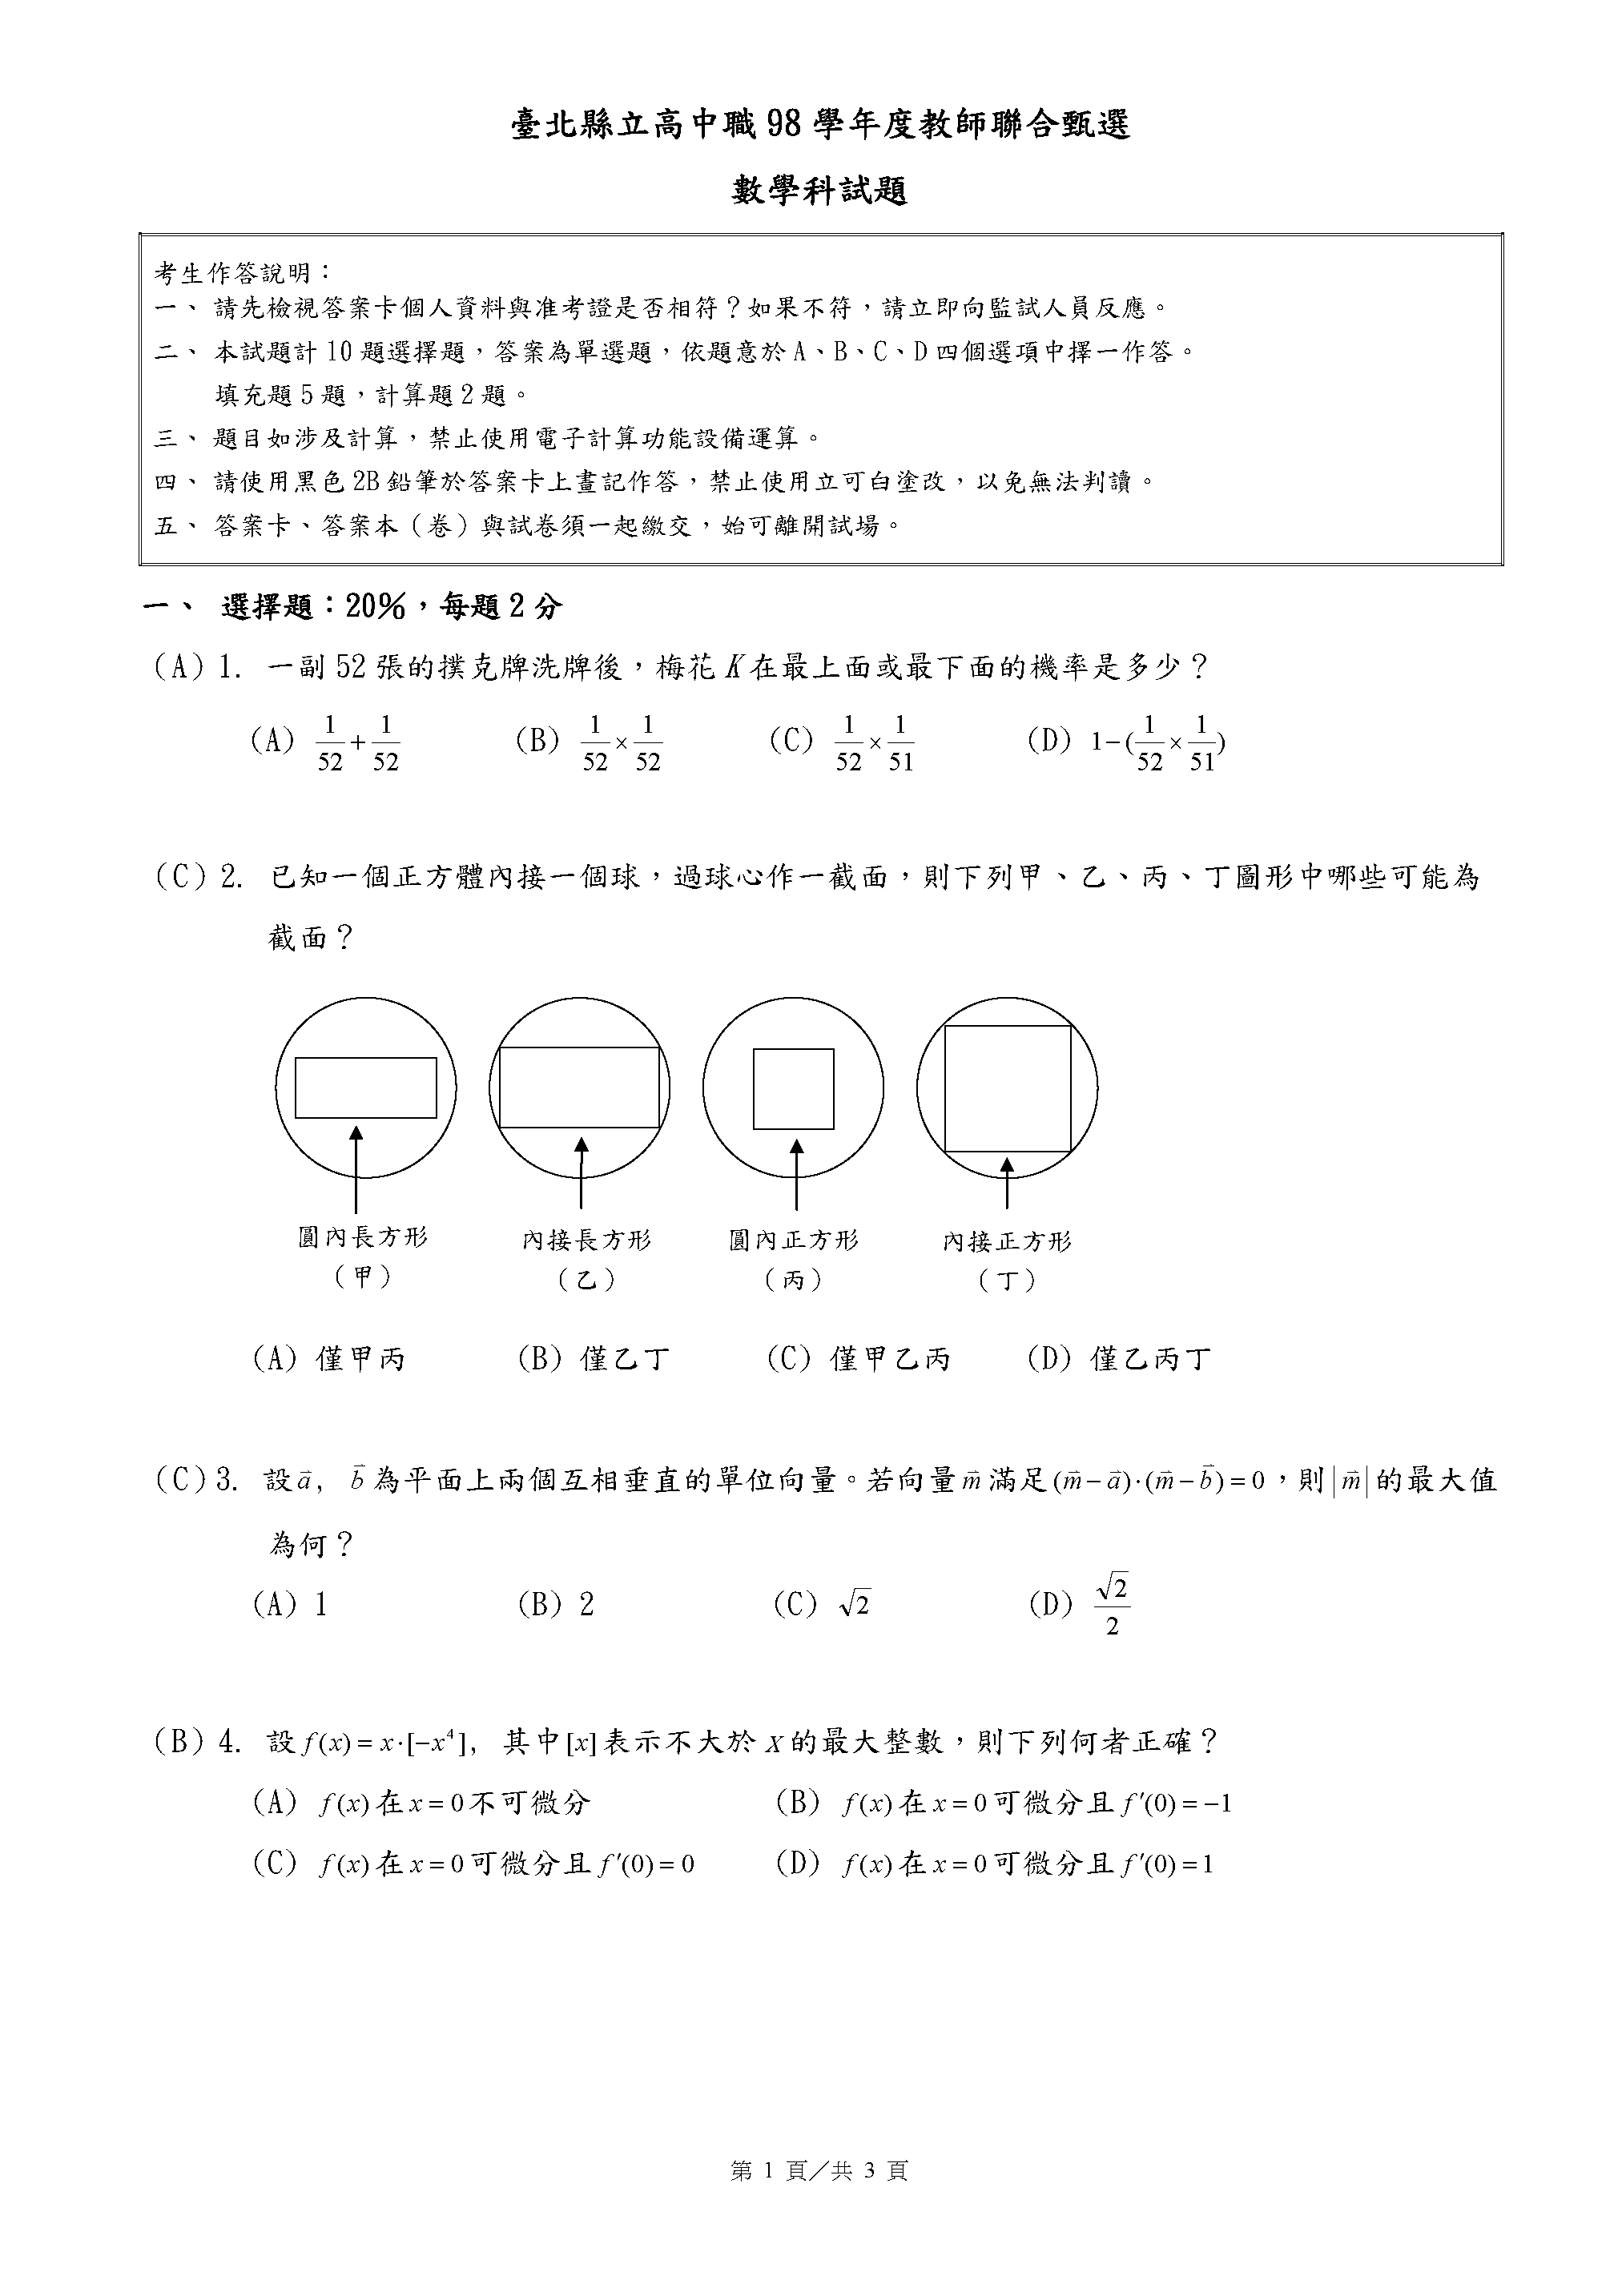 數學科答案_頁面_1.png